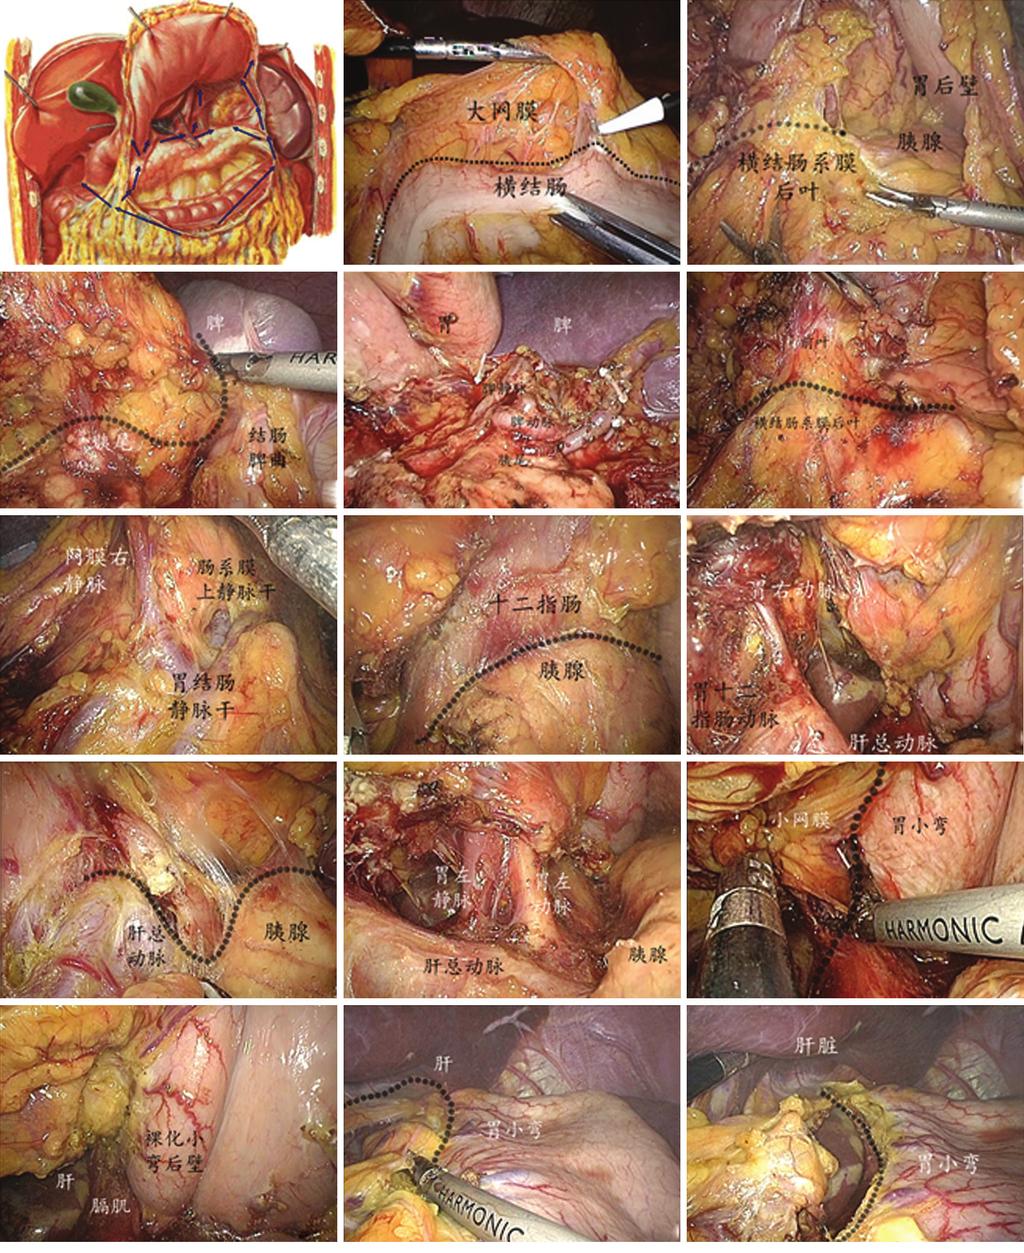 Translational Gastrointestinal Cancer, Vol 2 Suppl 1 June 2013 75 A B C D E F G H I J K L M N O Figure 2 A. Dissection sequences by region; B,C.